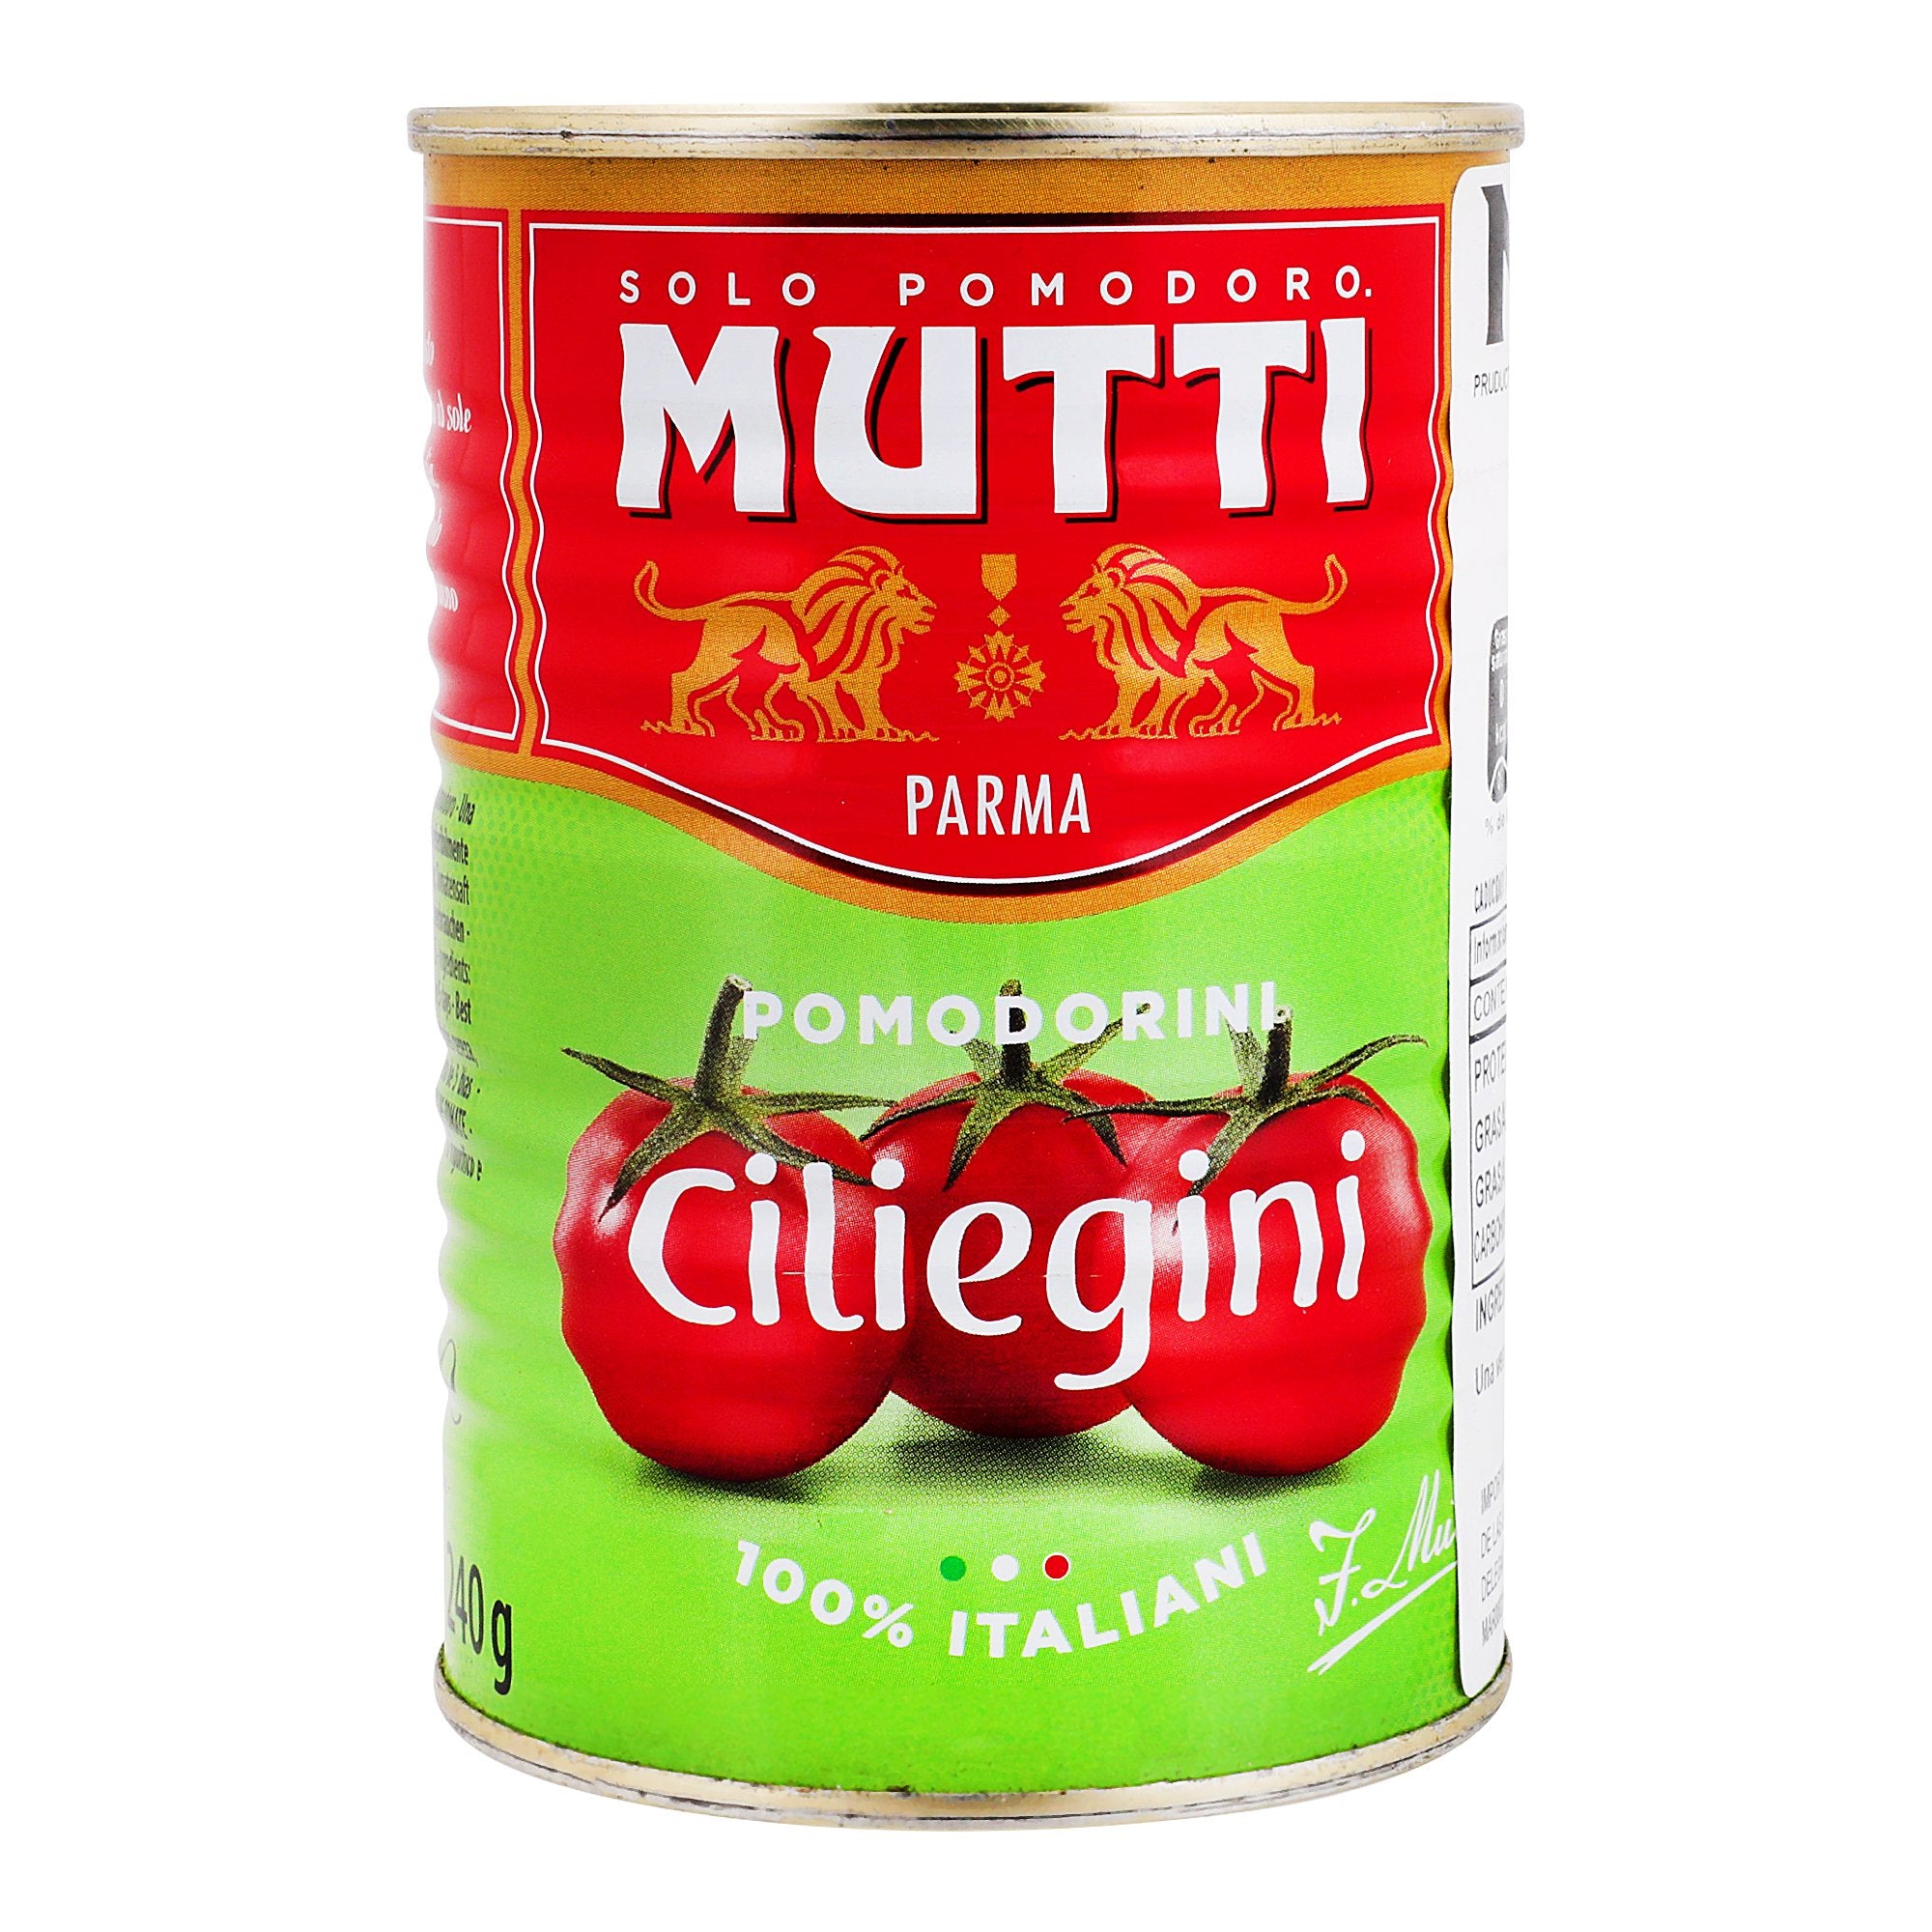 Mutti - Tomates Ciliegini (tomates Cherry) - 400 g - Italia